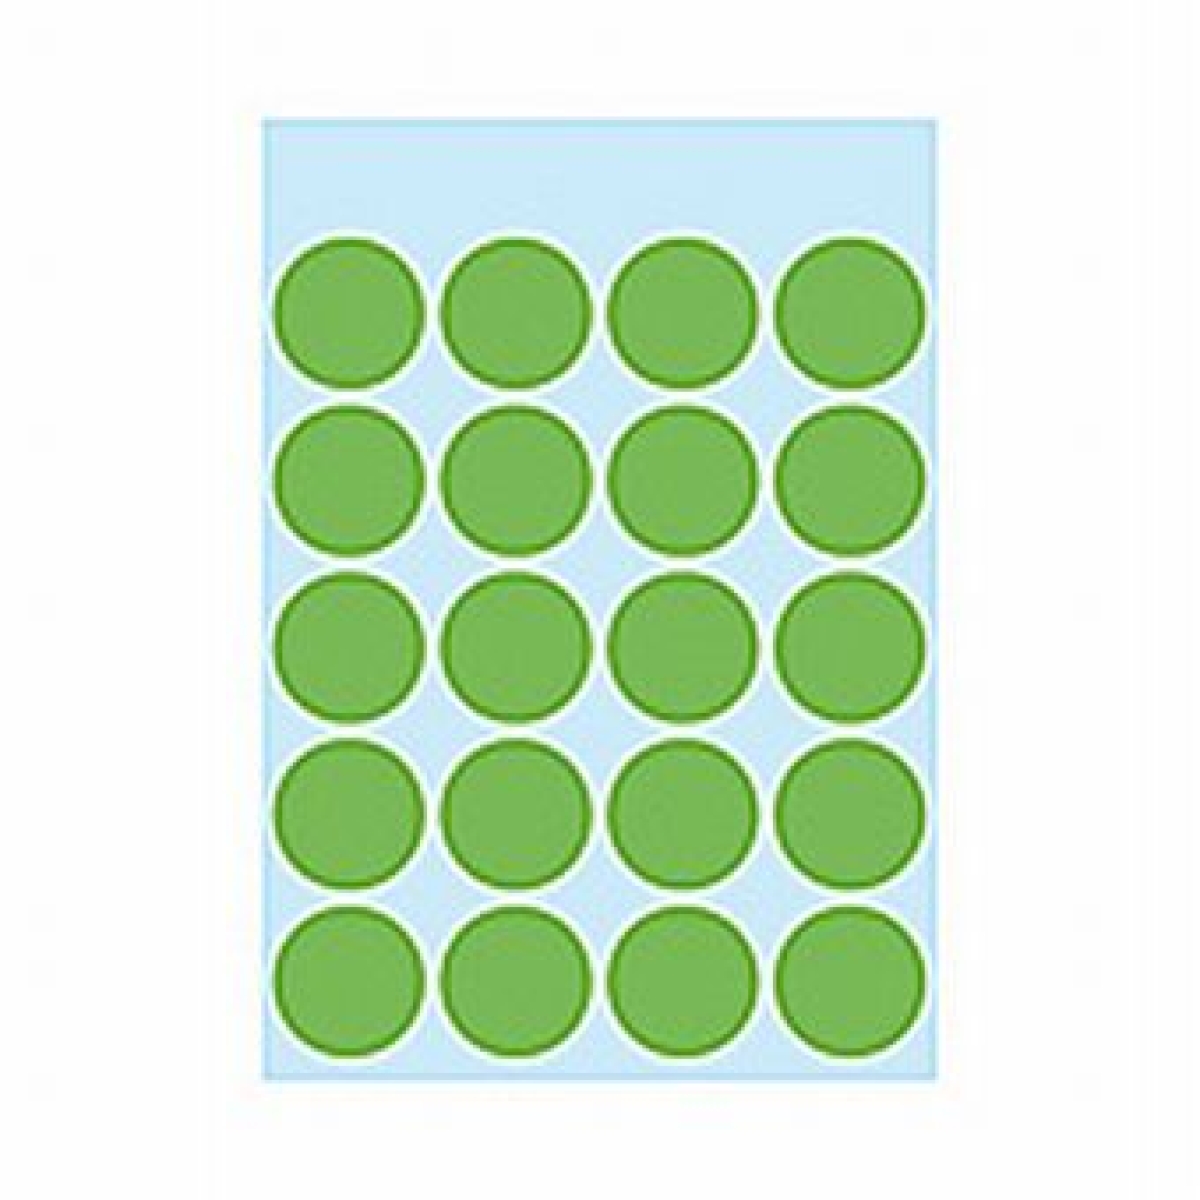 HermaEtikett Markierungspunkt 19mmD 100ST grün haftend 1875Artikel-Nr: 4008705018753